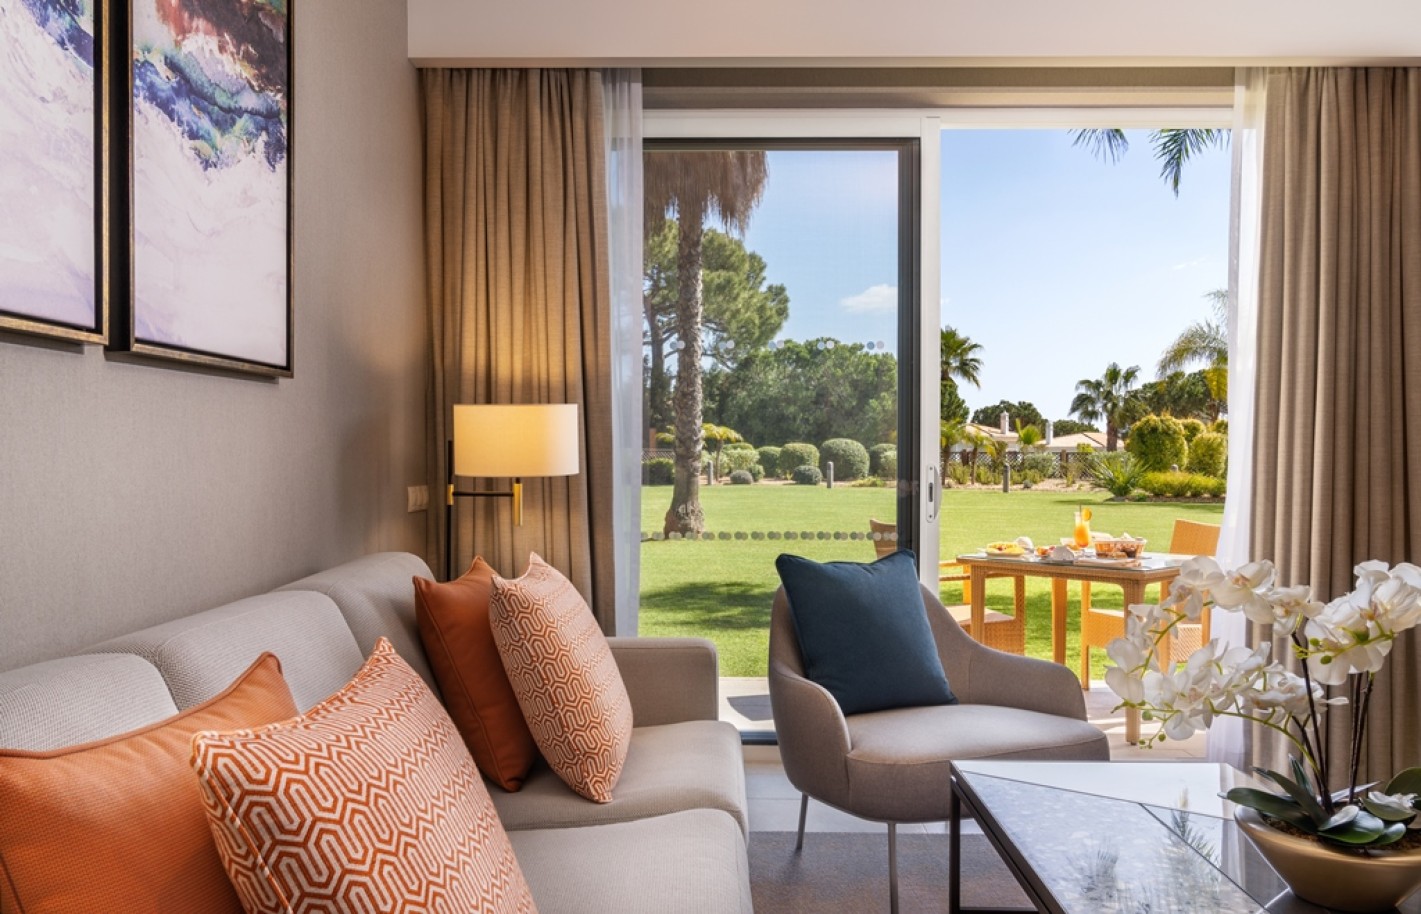 Apartamento, 2 quartos, piscina, para venda na Quinta do Lago, Algarve_262205